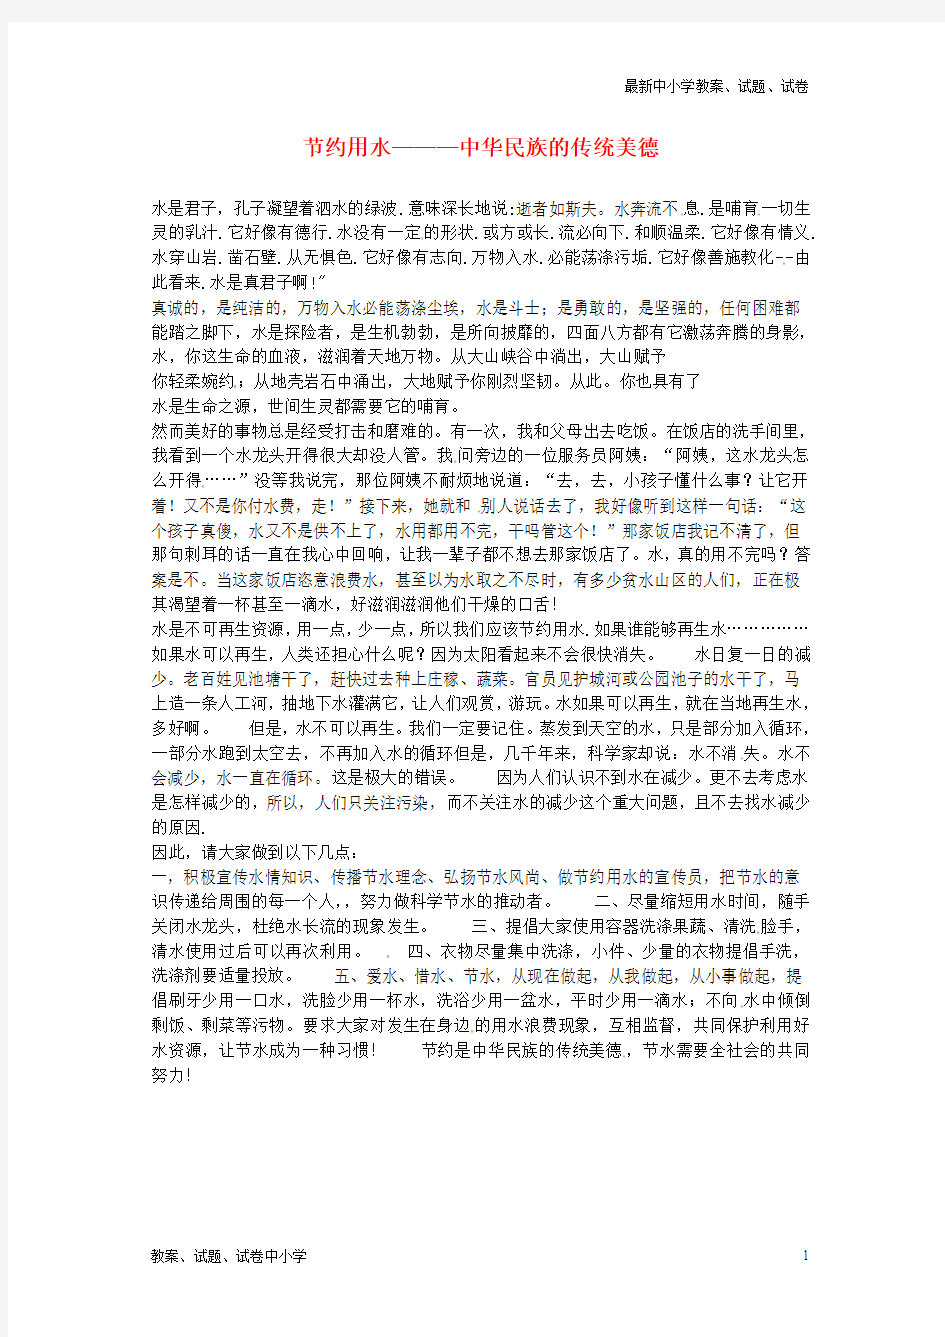 【精品】中学初中语文节约用水—中华民族的传统美德学生优秀作文素材